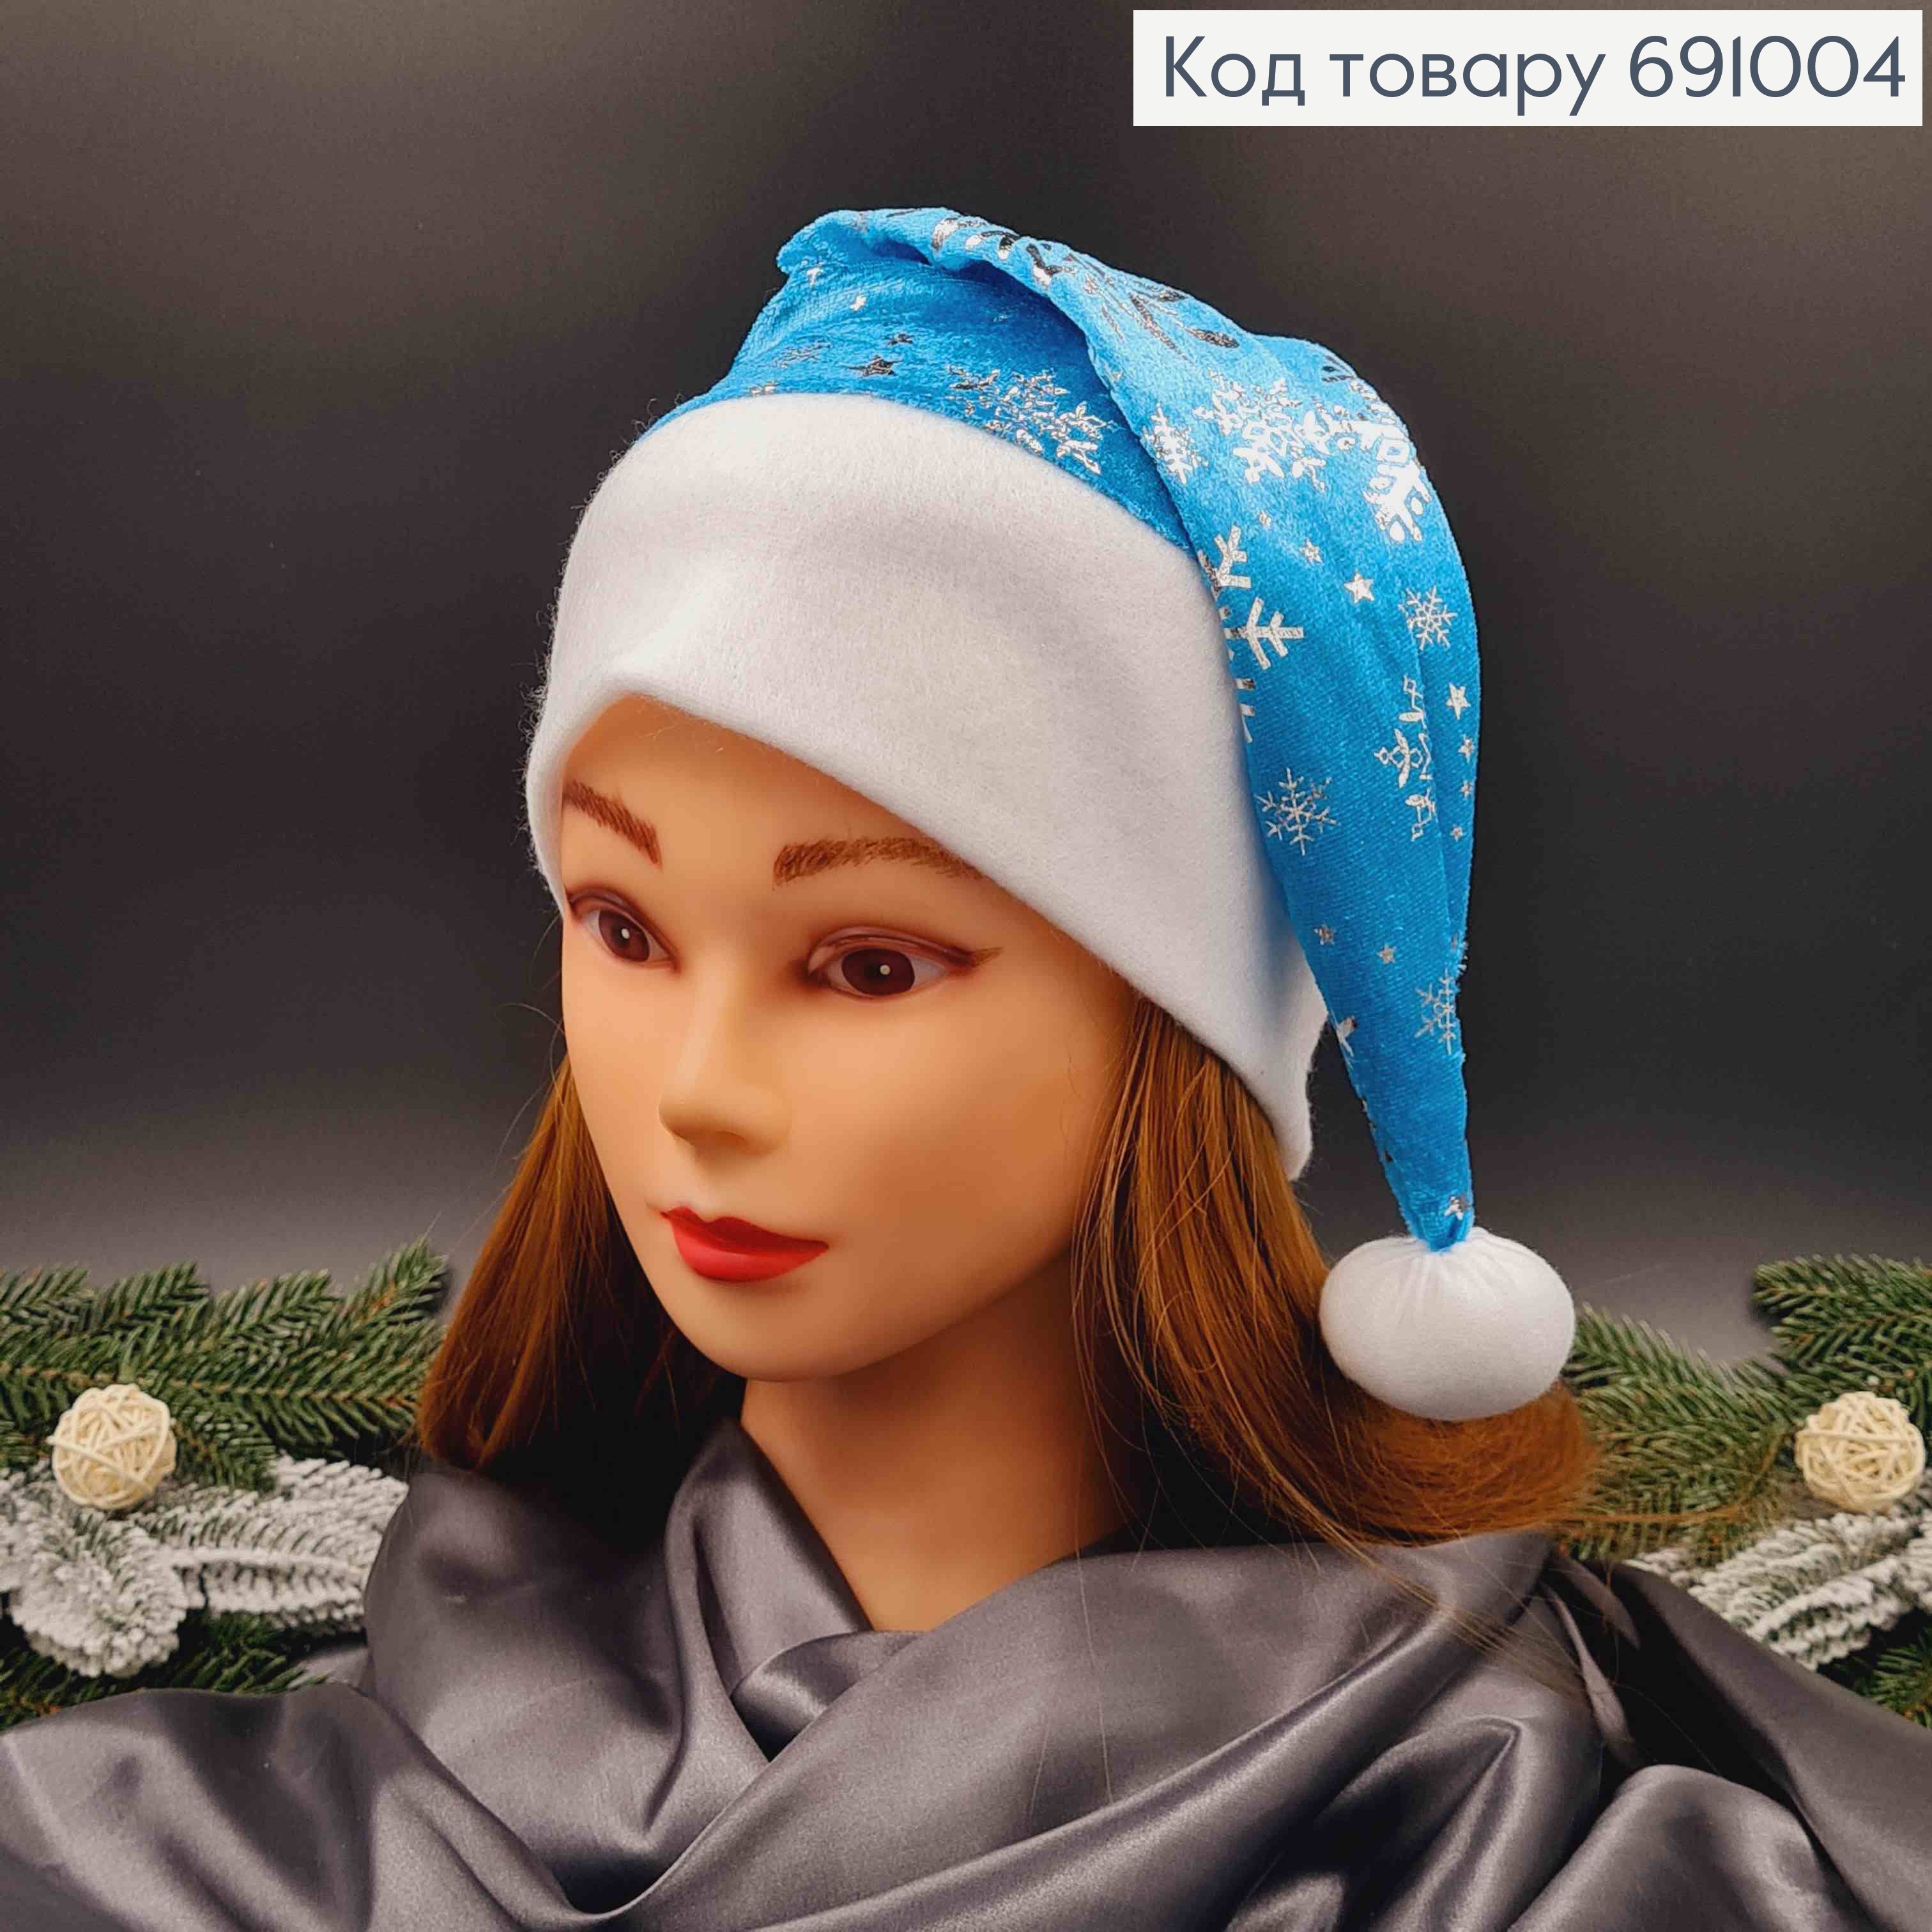 Шапочка новорічна, Блакитного кольору з сніжинками срібного кольору, велюрова 691004 фото 2